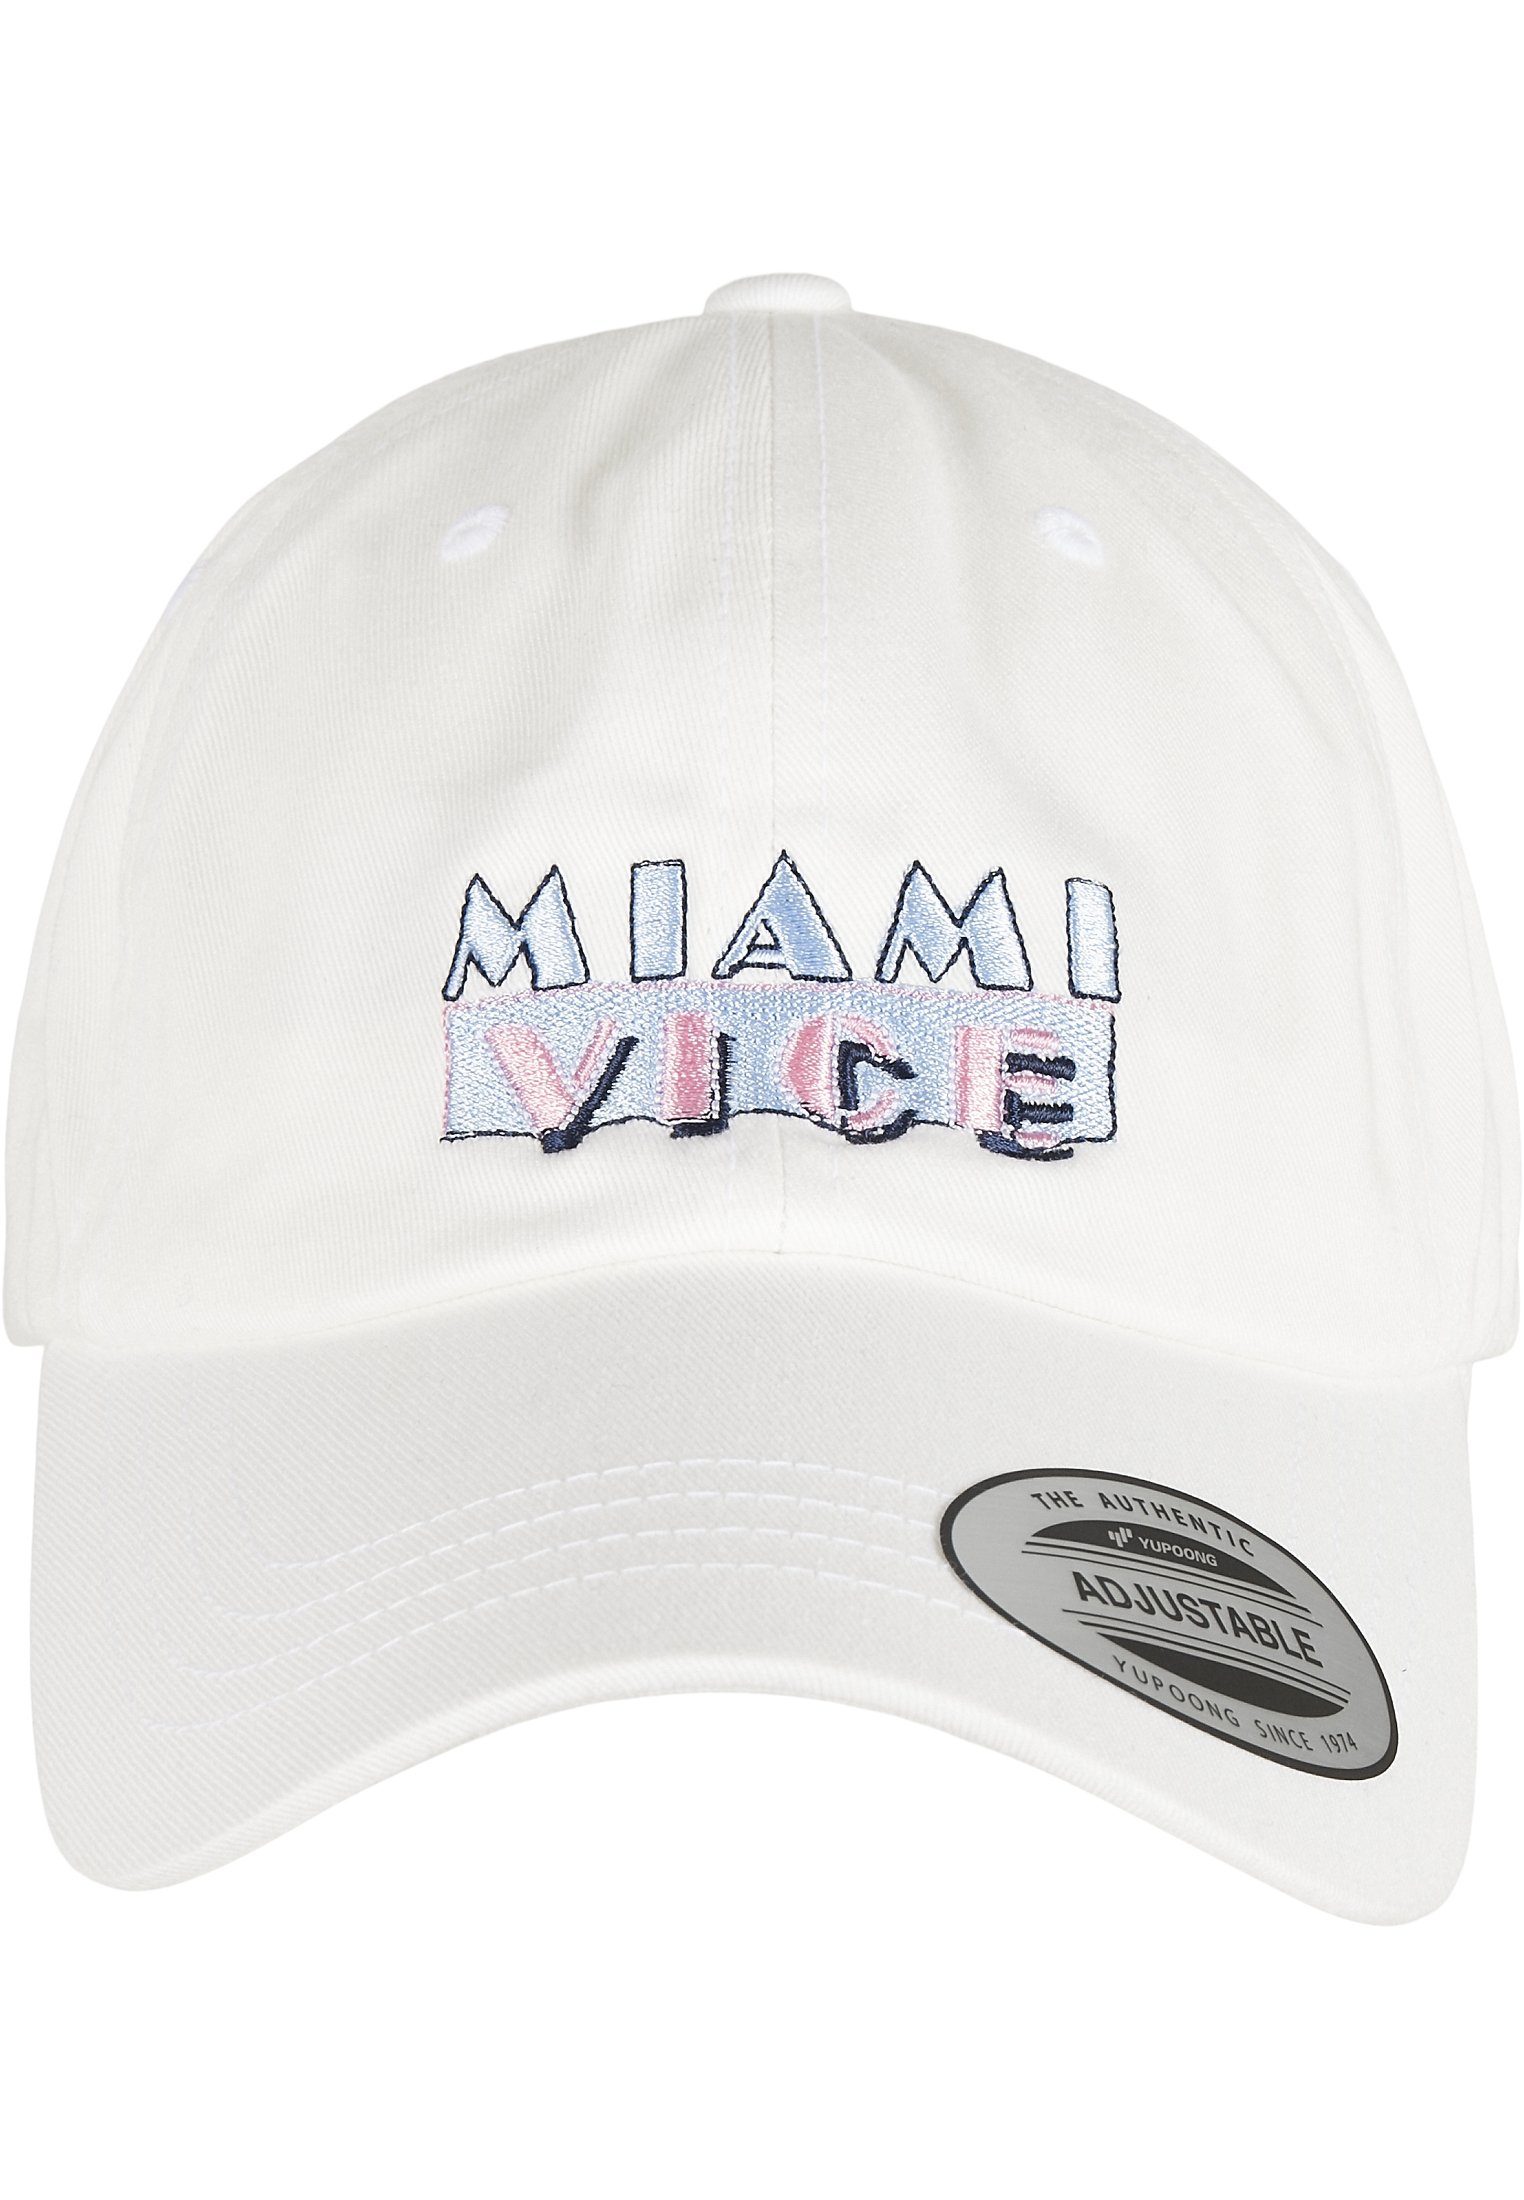 Caps Miami Cap Logo Vice Merchcode Dad Cap Flex